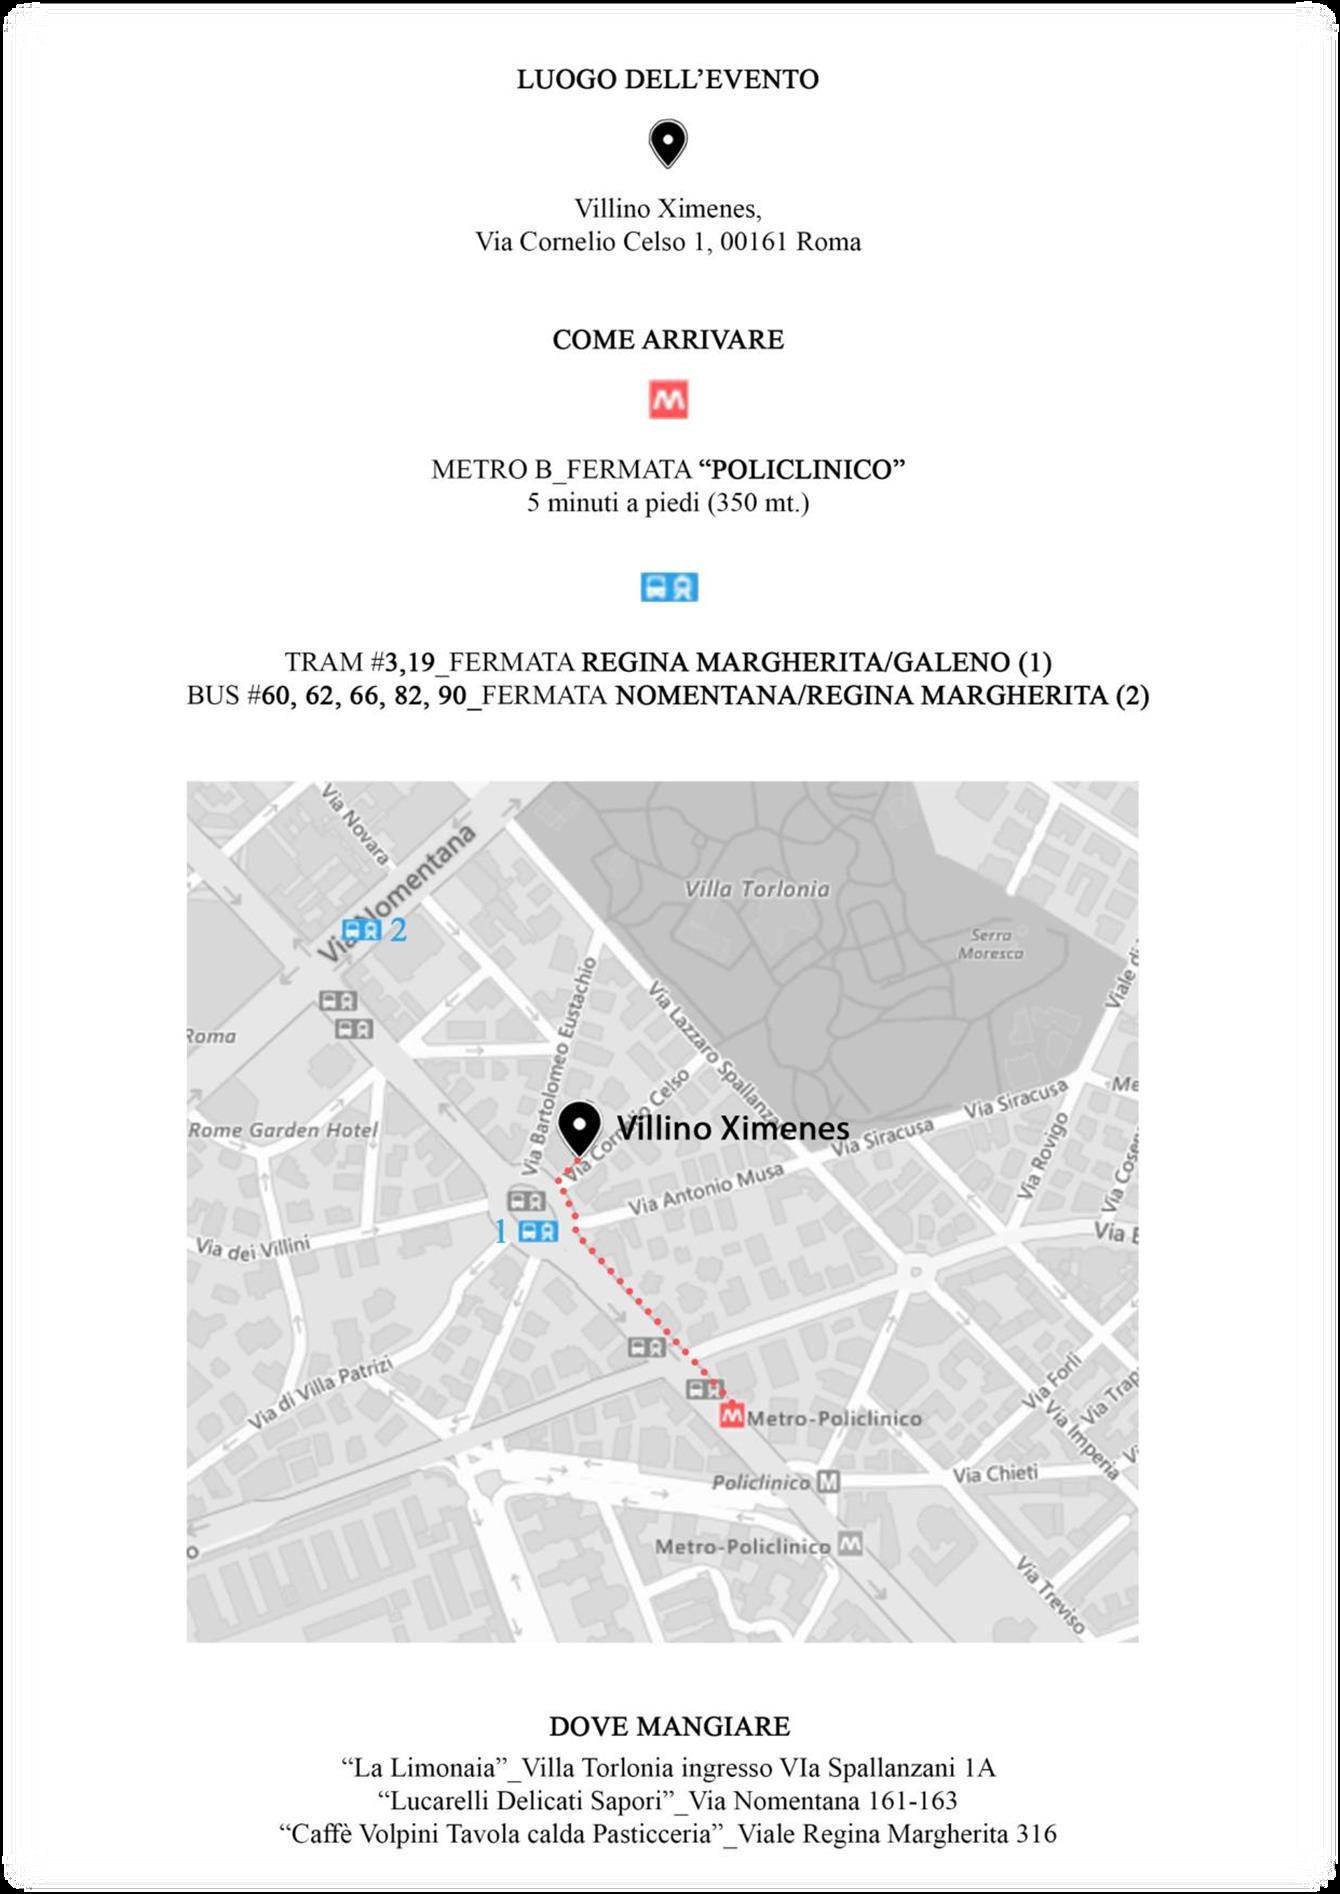 Mappa evento del 23-3-2019 a Roma